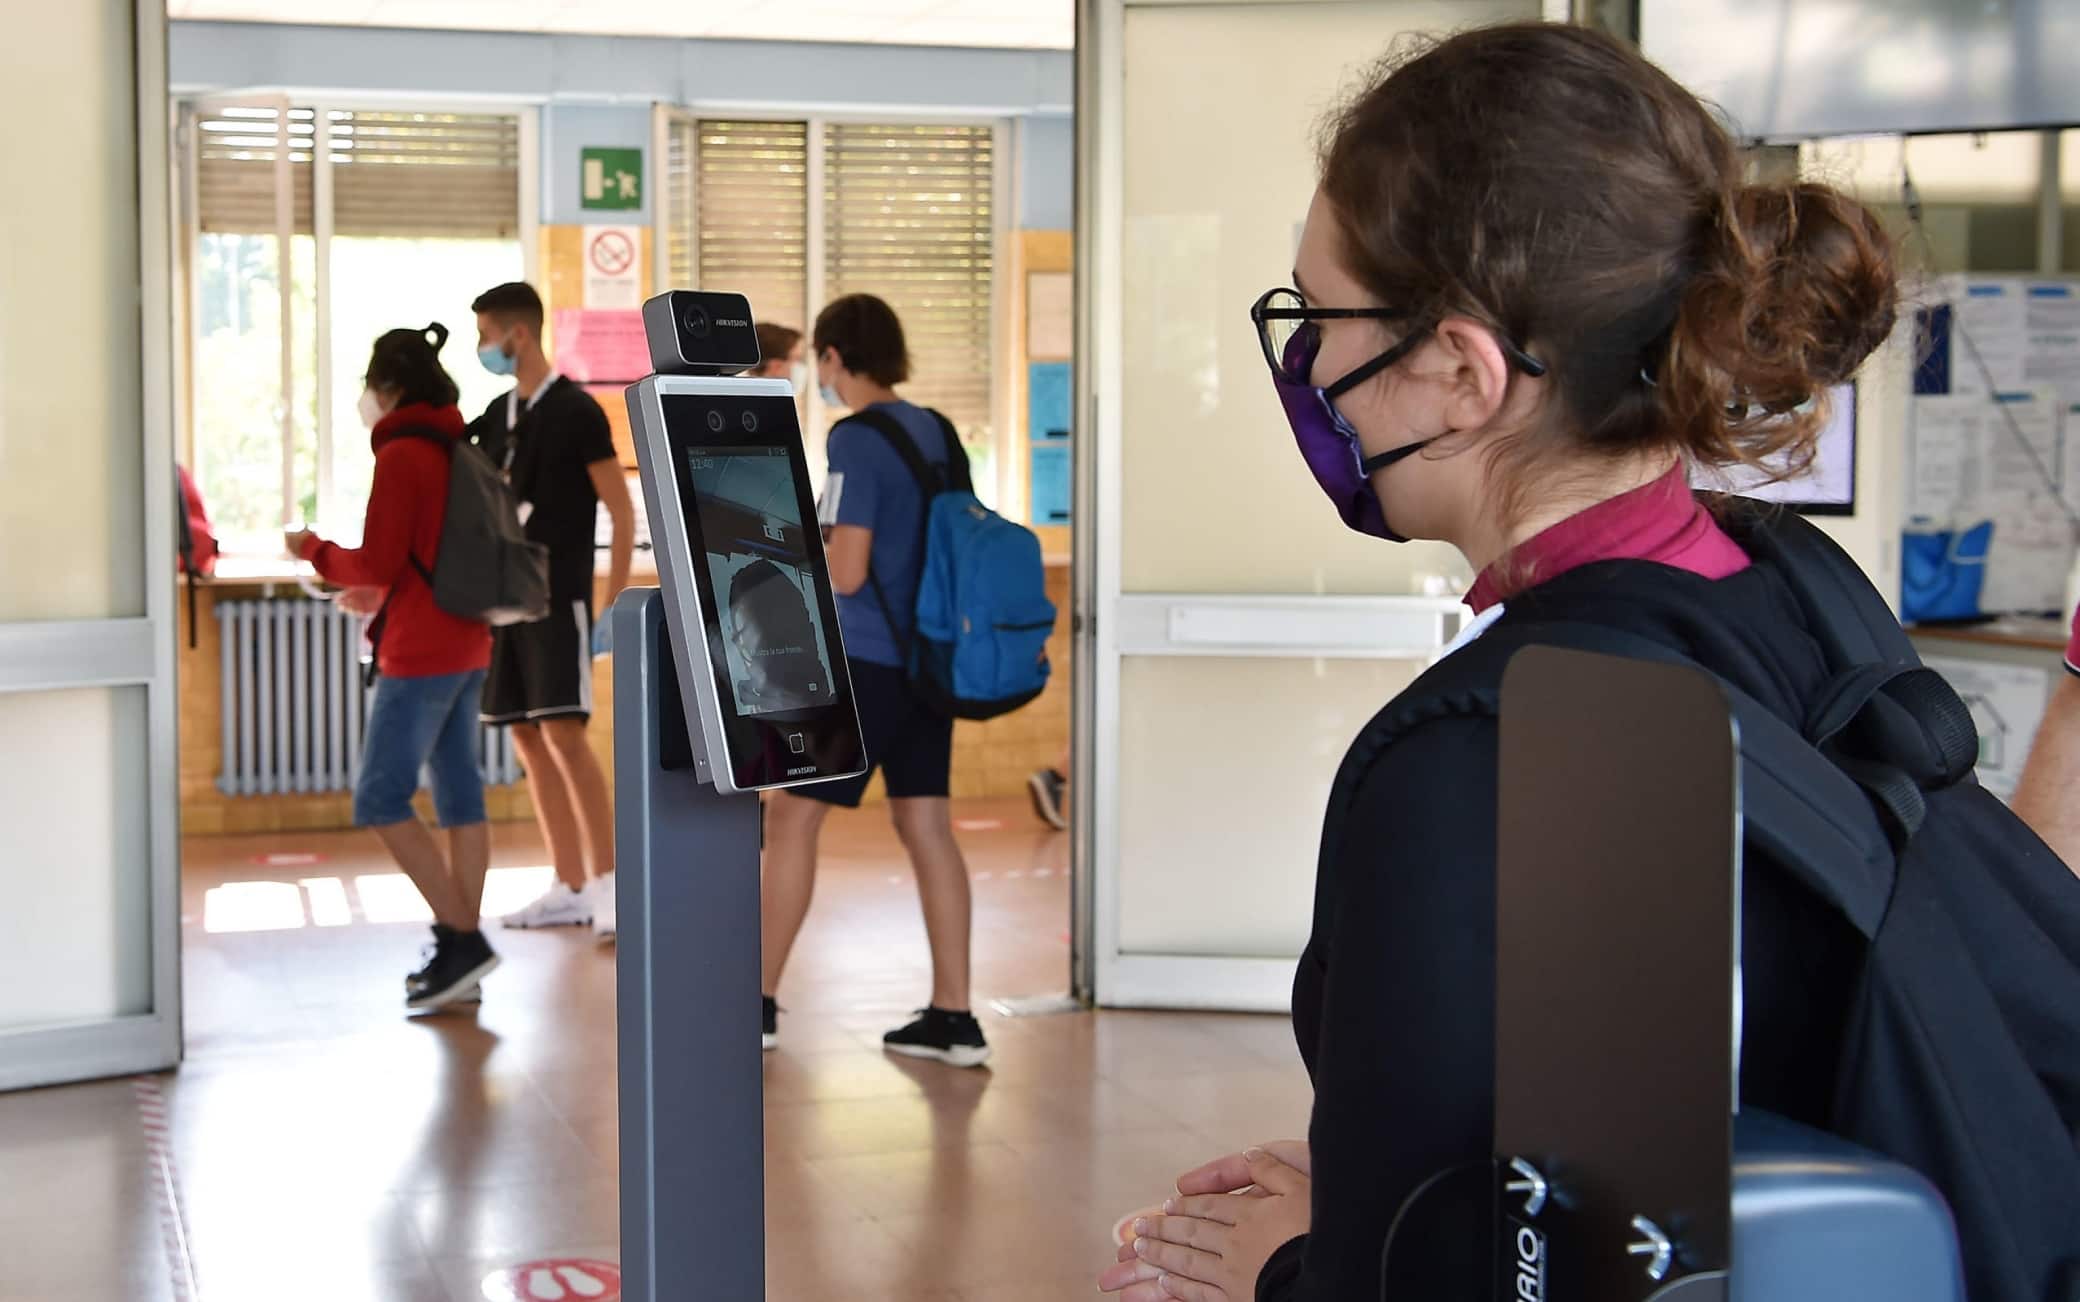 Istituto IFTS Carlo Grassi attrezzata con termoscanner per accogliere gli studenti nel primo giorno di riapertura della scuola, Torino, 14 settembre 2020 ANSA/ ALESSANDRO DI MARCO